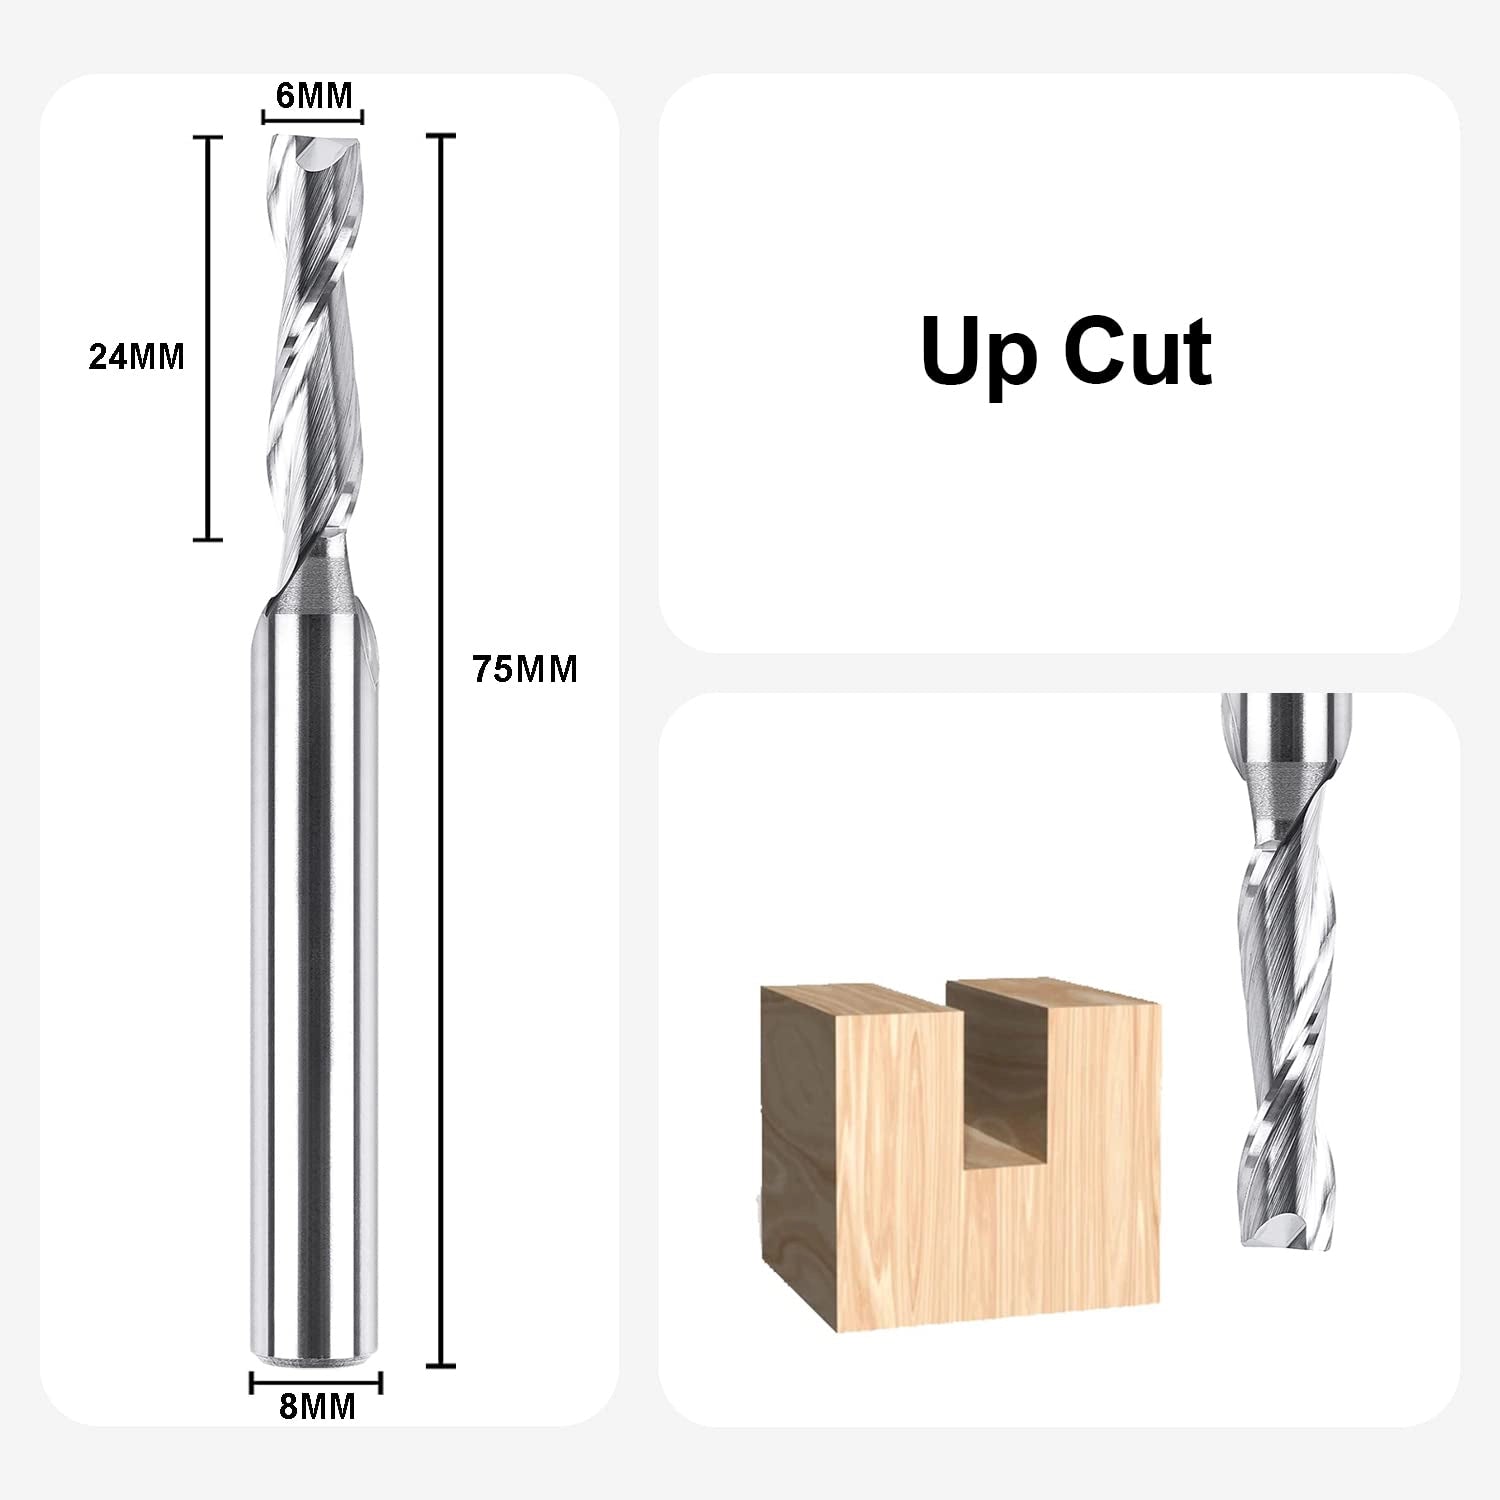 SpeTool DE Upcut CNC Spiralfräser VHM 2 Flöten Oberfräse Fräser Holz mit 6 mm Schnittdurchmesser, 8 mm Schaft, Router Bit zum Schneiden von Holz